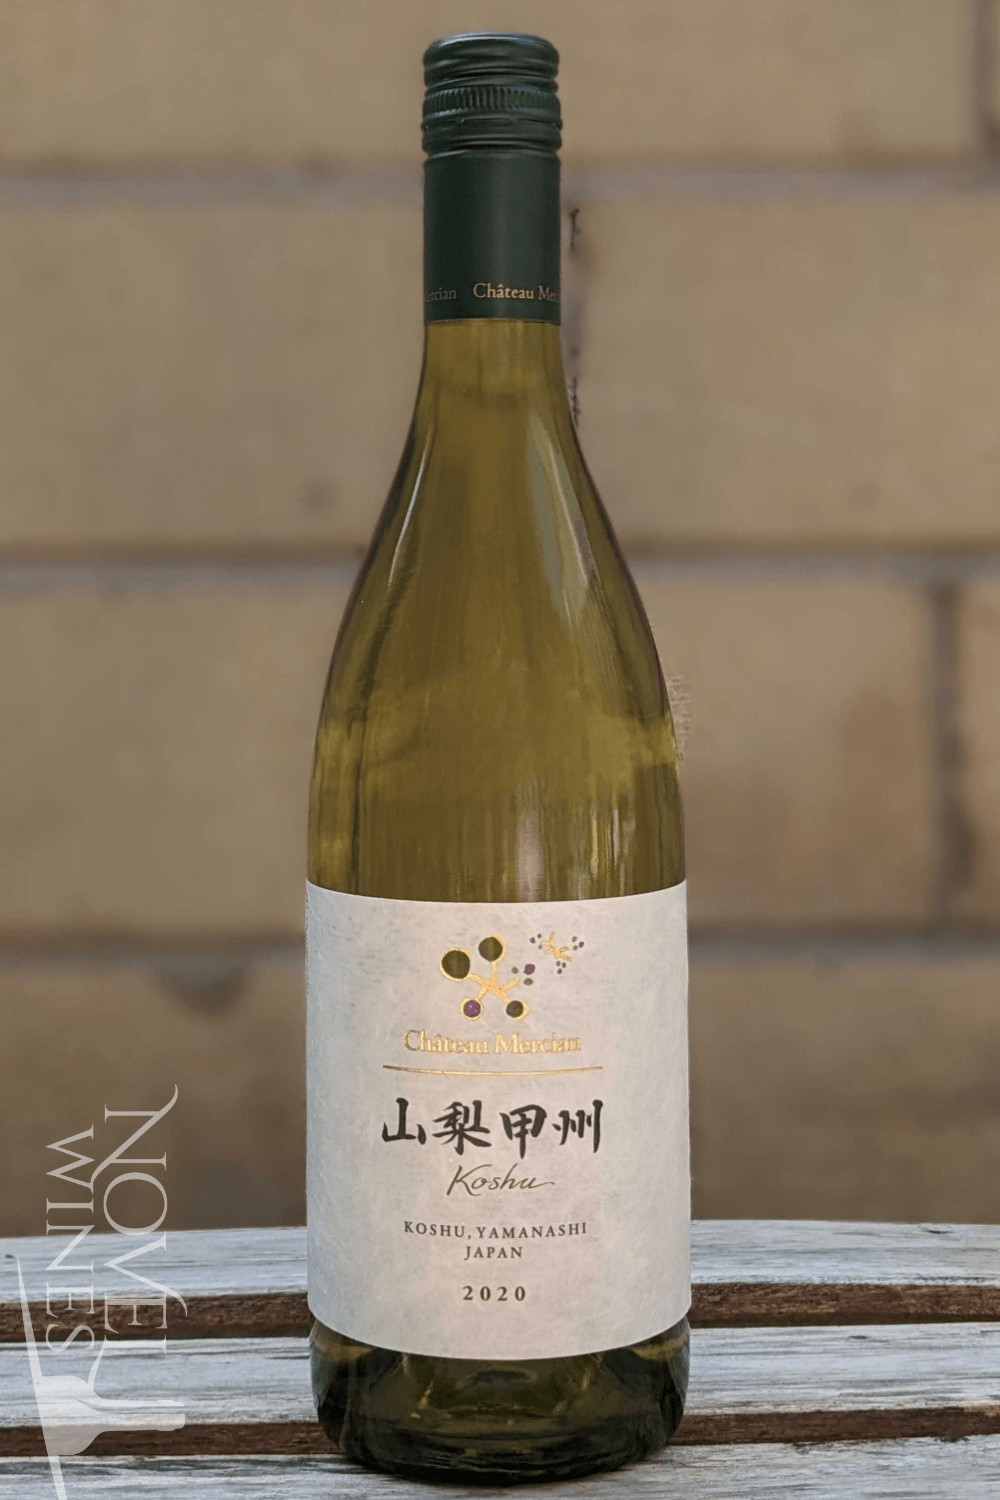 Novel Wines White Wine Chateau Mercian Yamanashi Koshu 2020, Japan